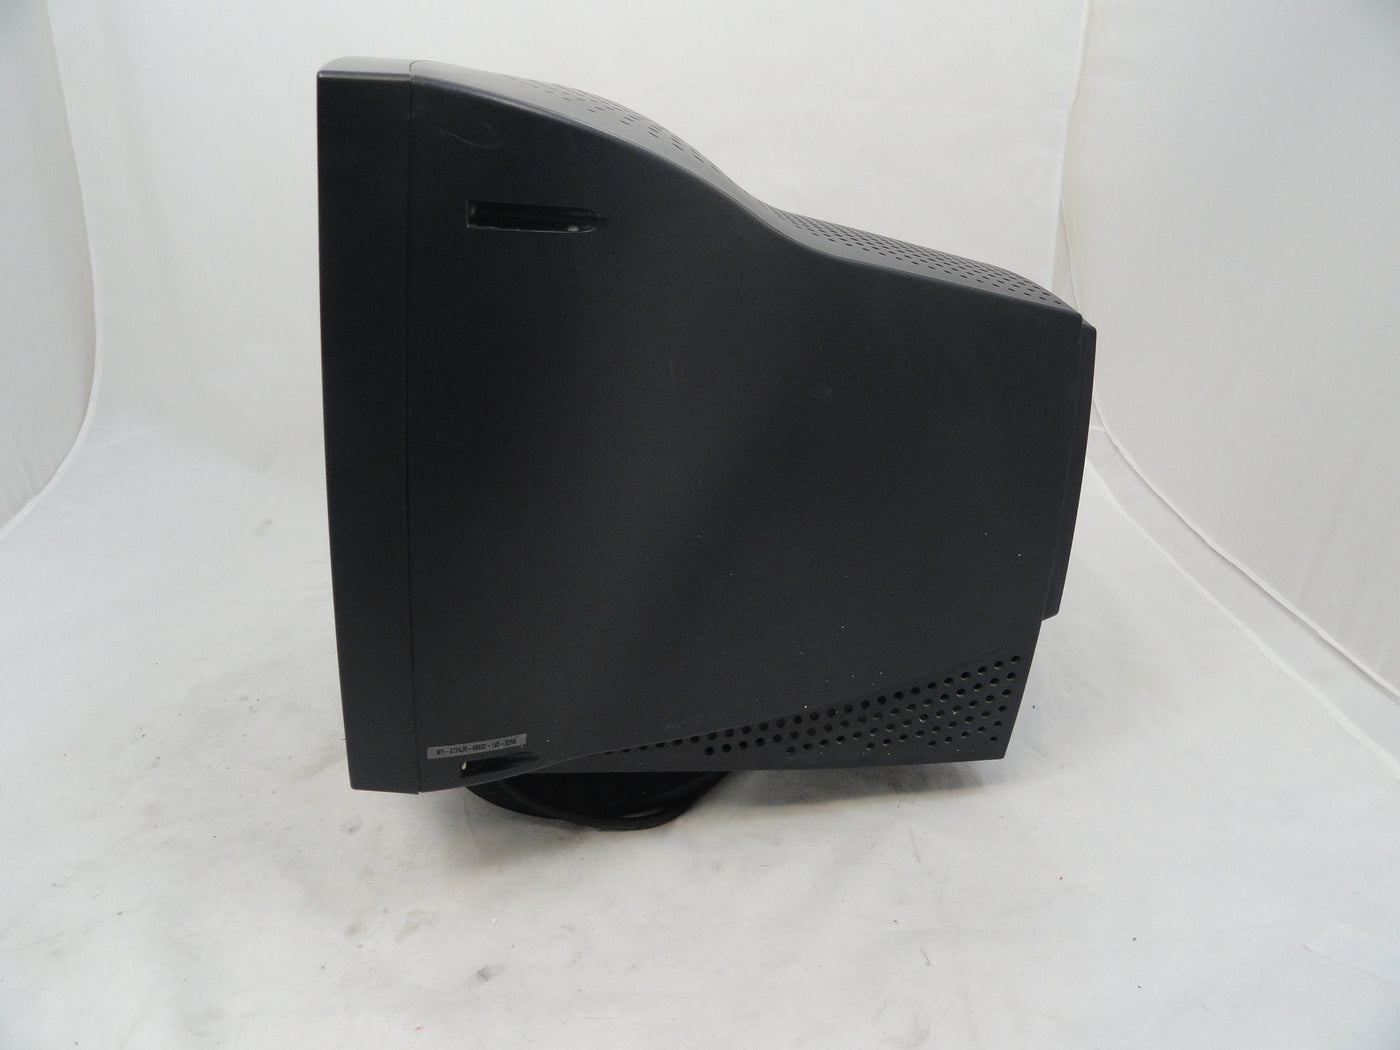 E551 - Dell 15" CRT Monitor - Black - 1024x768 - 60Hz - 0.28 - USED